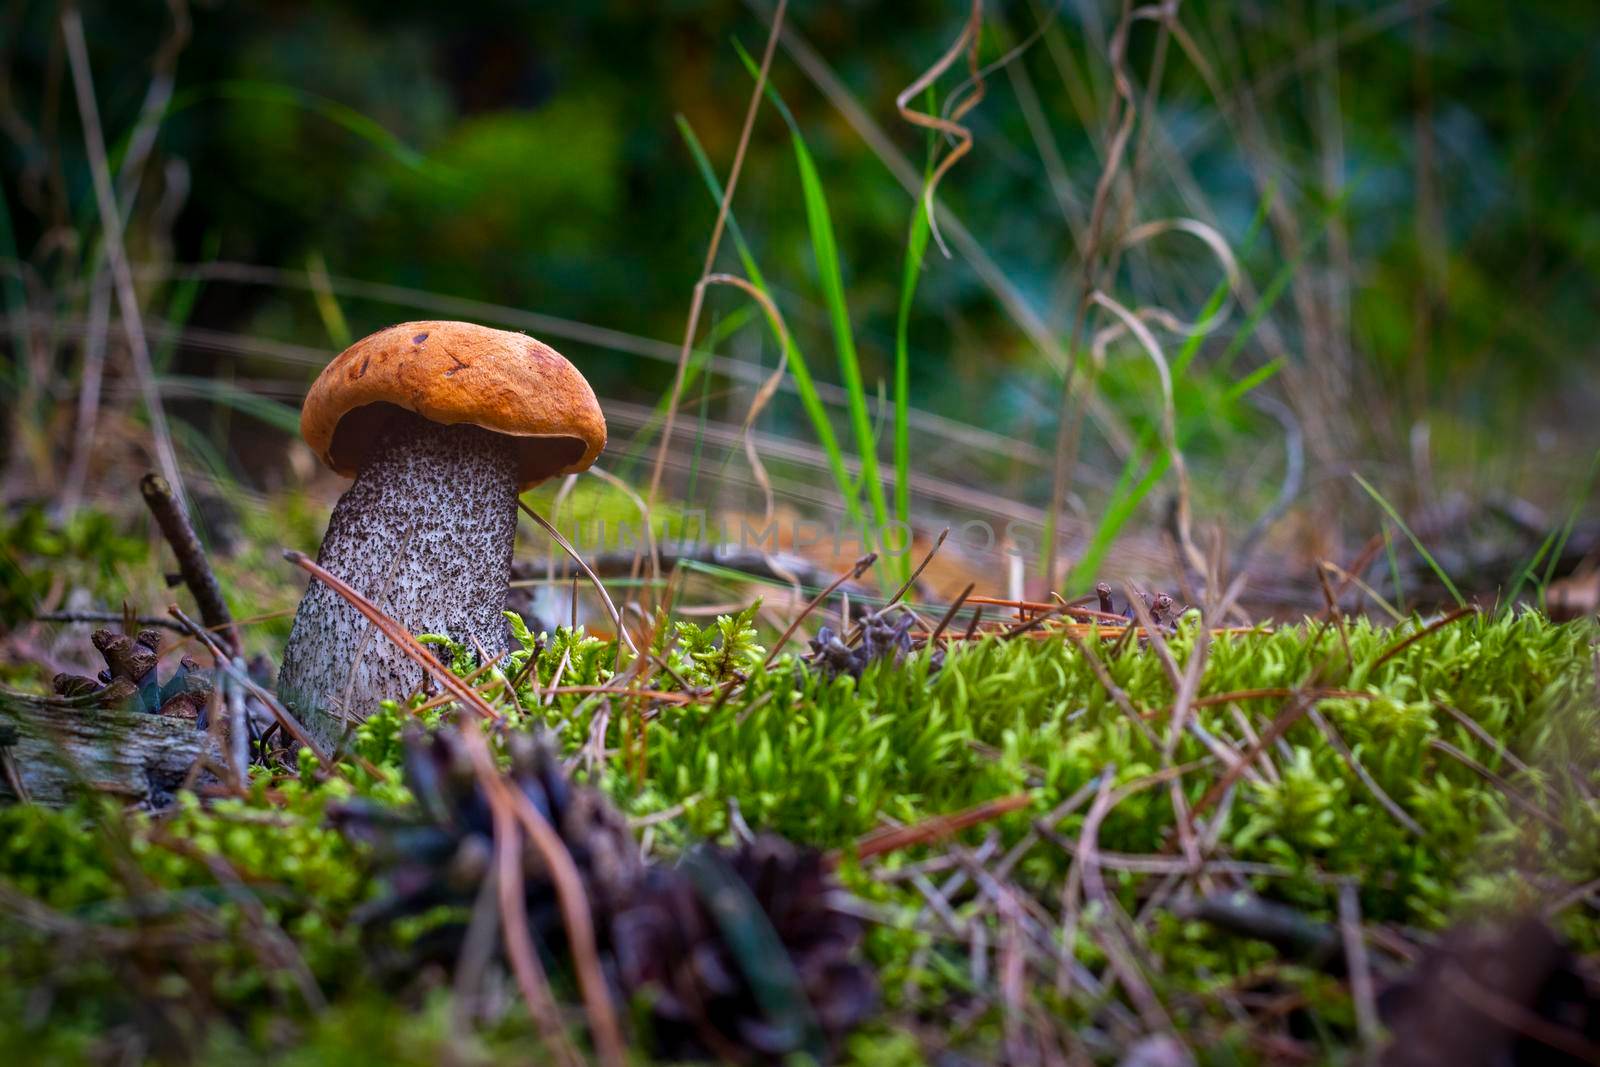 Boletus edulis mushroom grow in forest. Orange cap mushrooms in wood